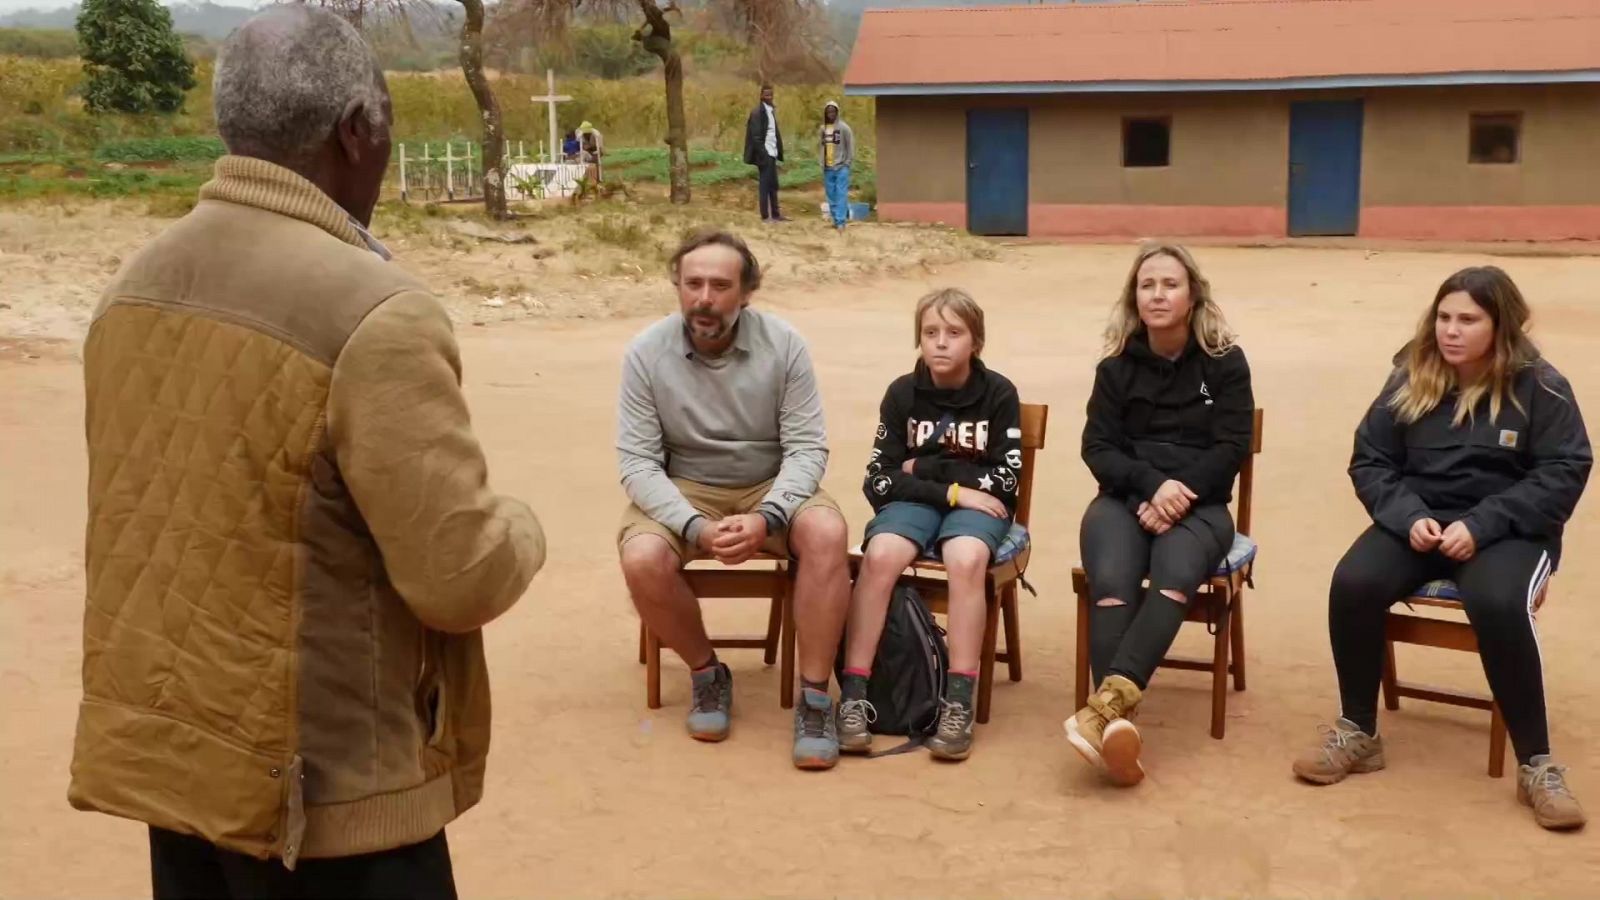 Mi familia en la mochila. Family Run - Ruta África - Episodio 12: De Zanzíbar al Valle de Mangola, Tanzania